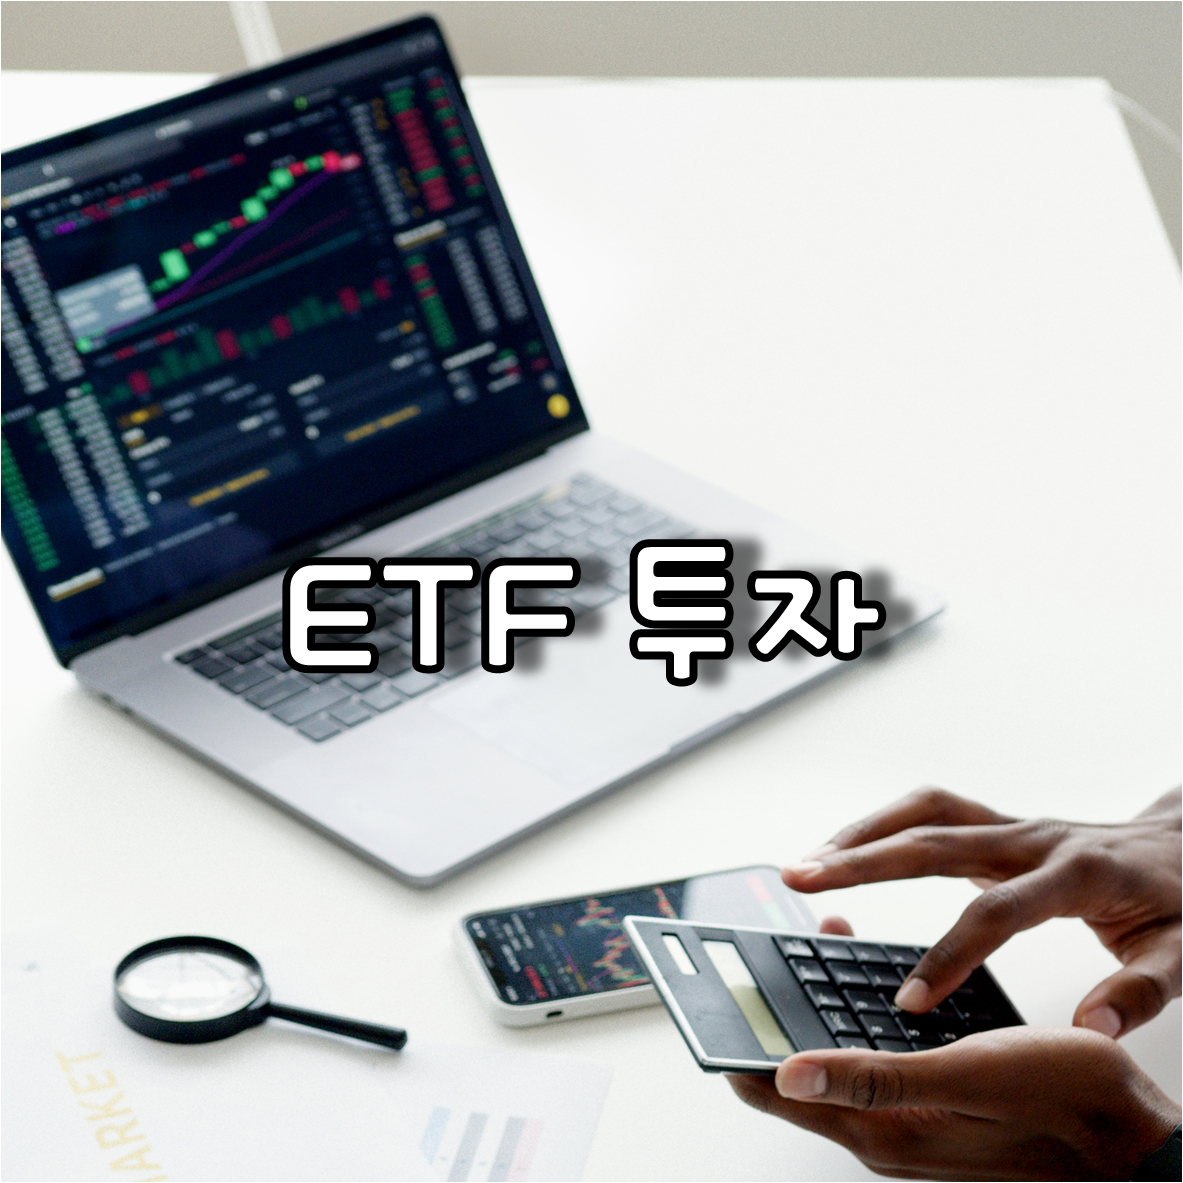 ETF 투자